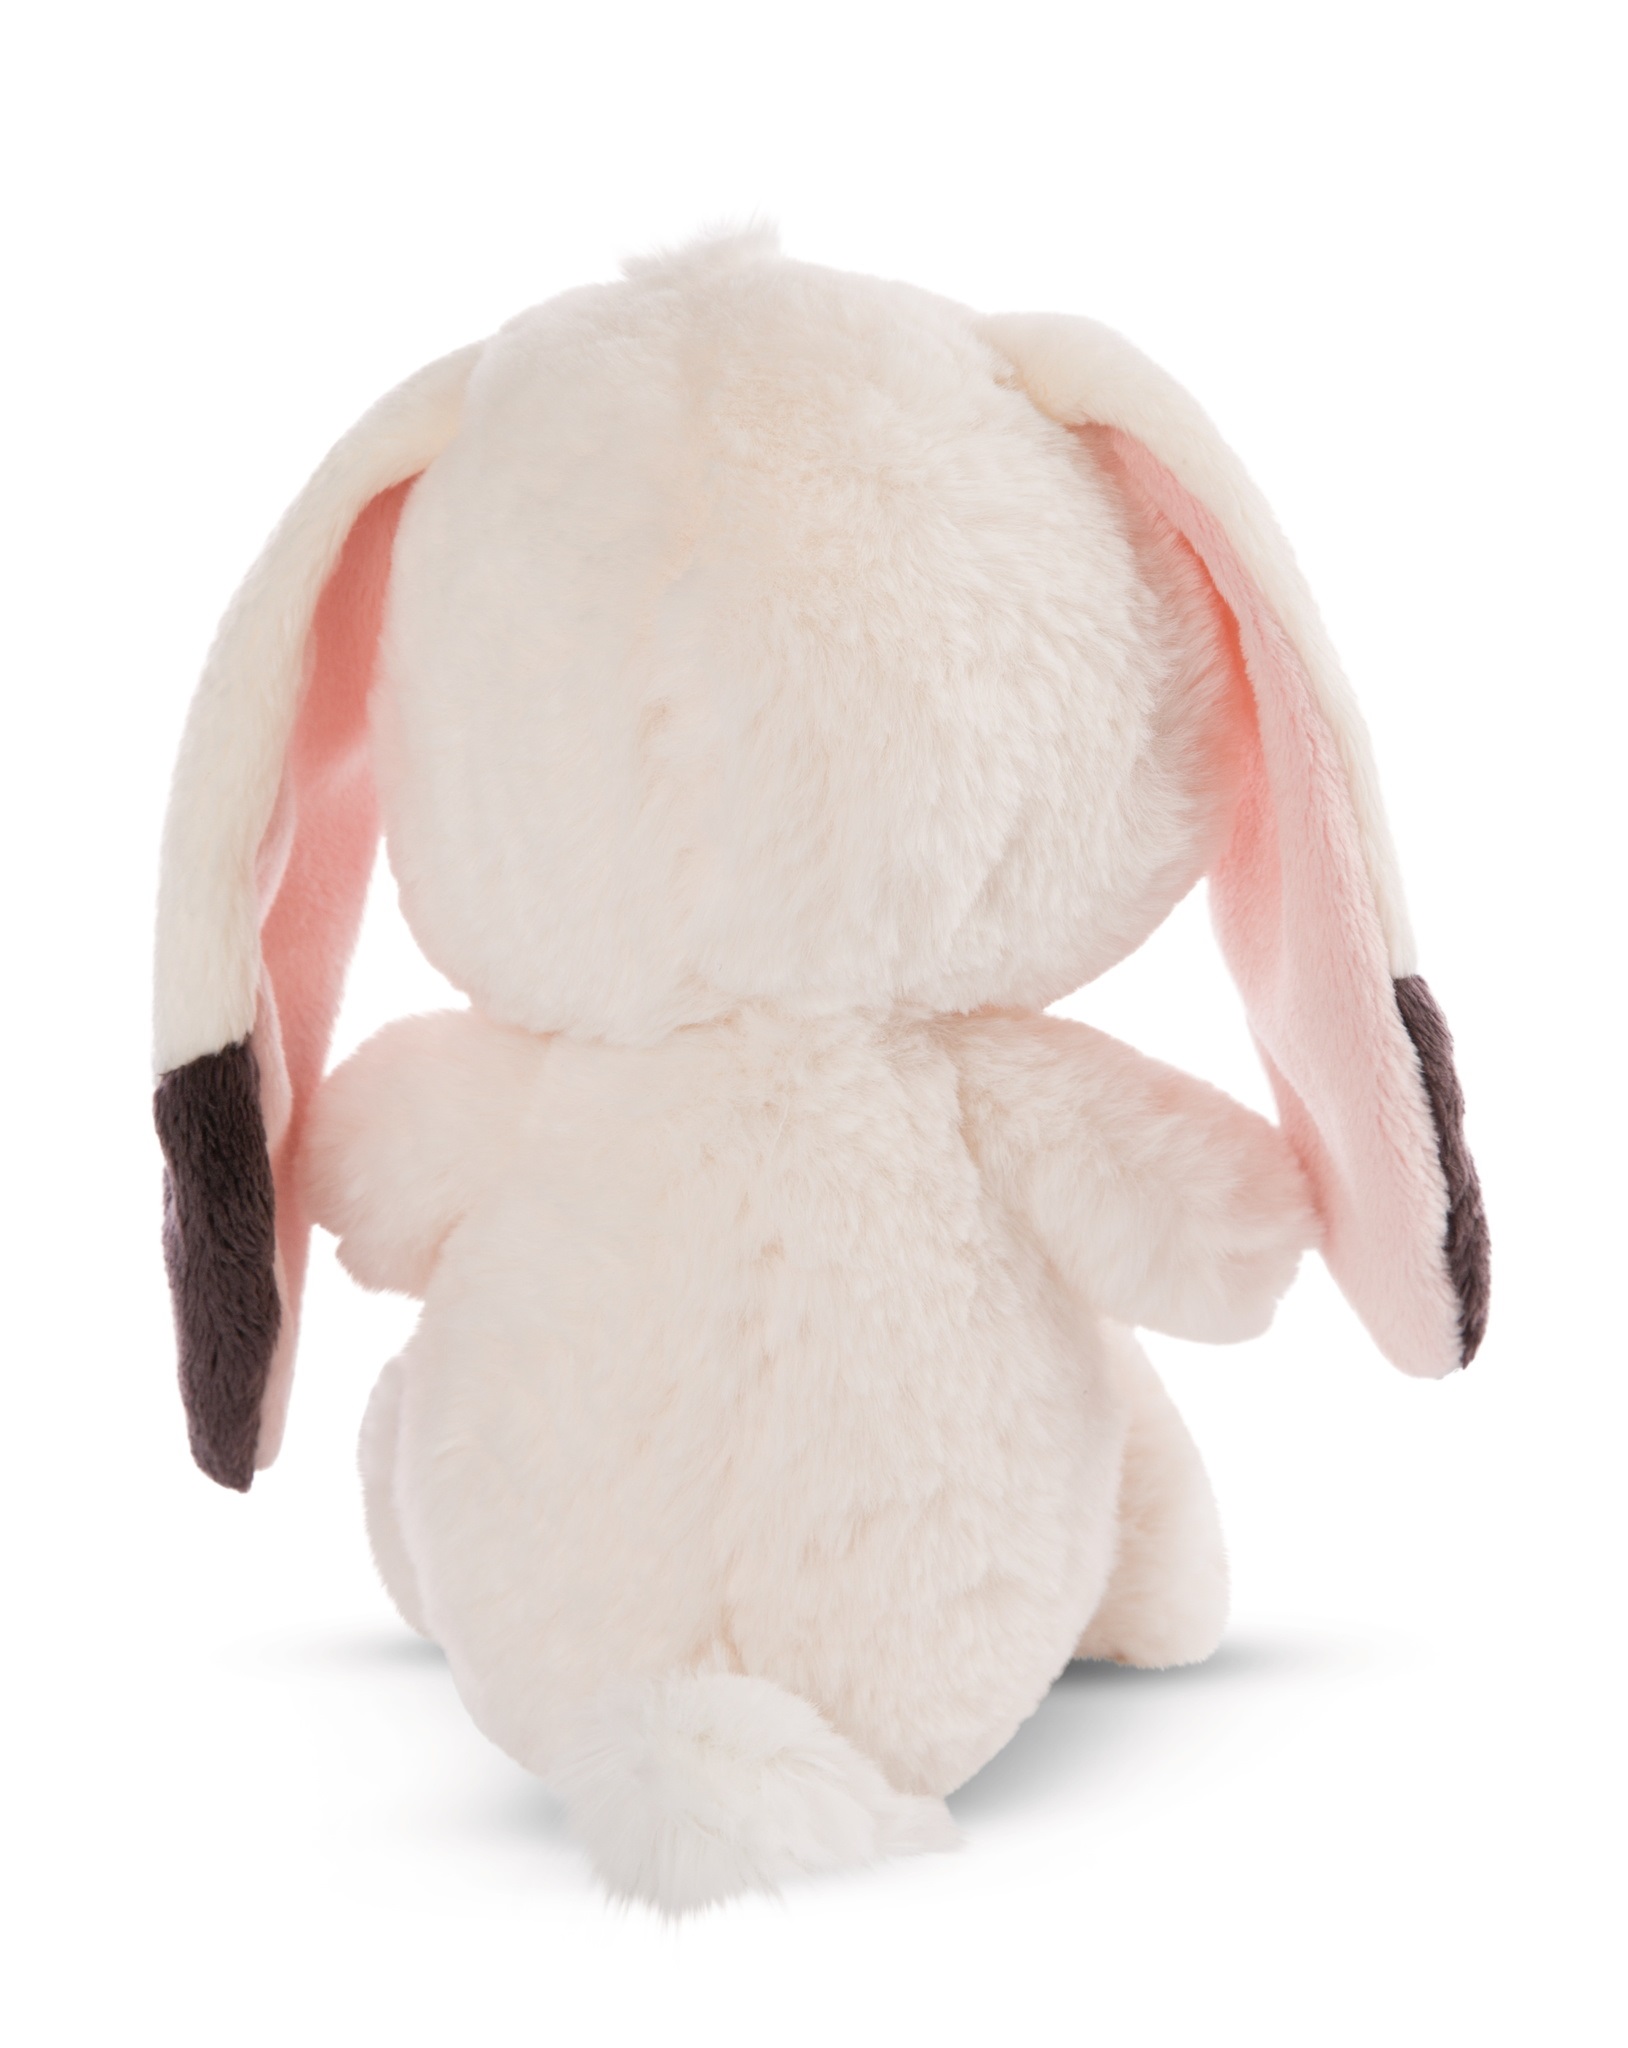 NICI 47477 Maskotka Królik Love Bunny Fluffy 35 cm